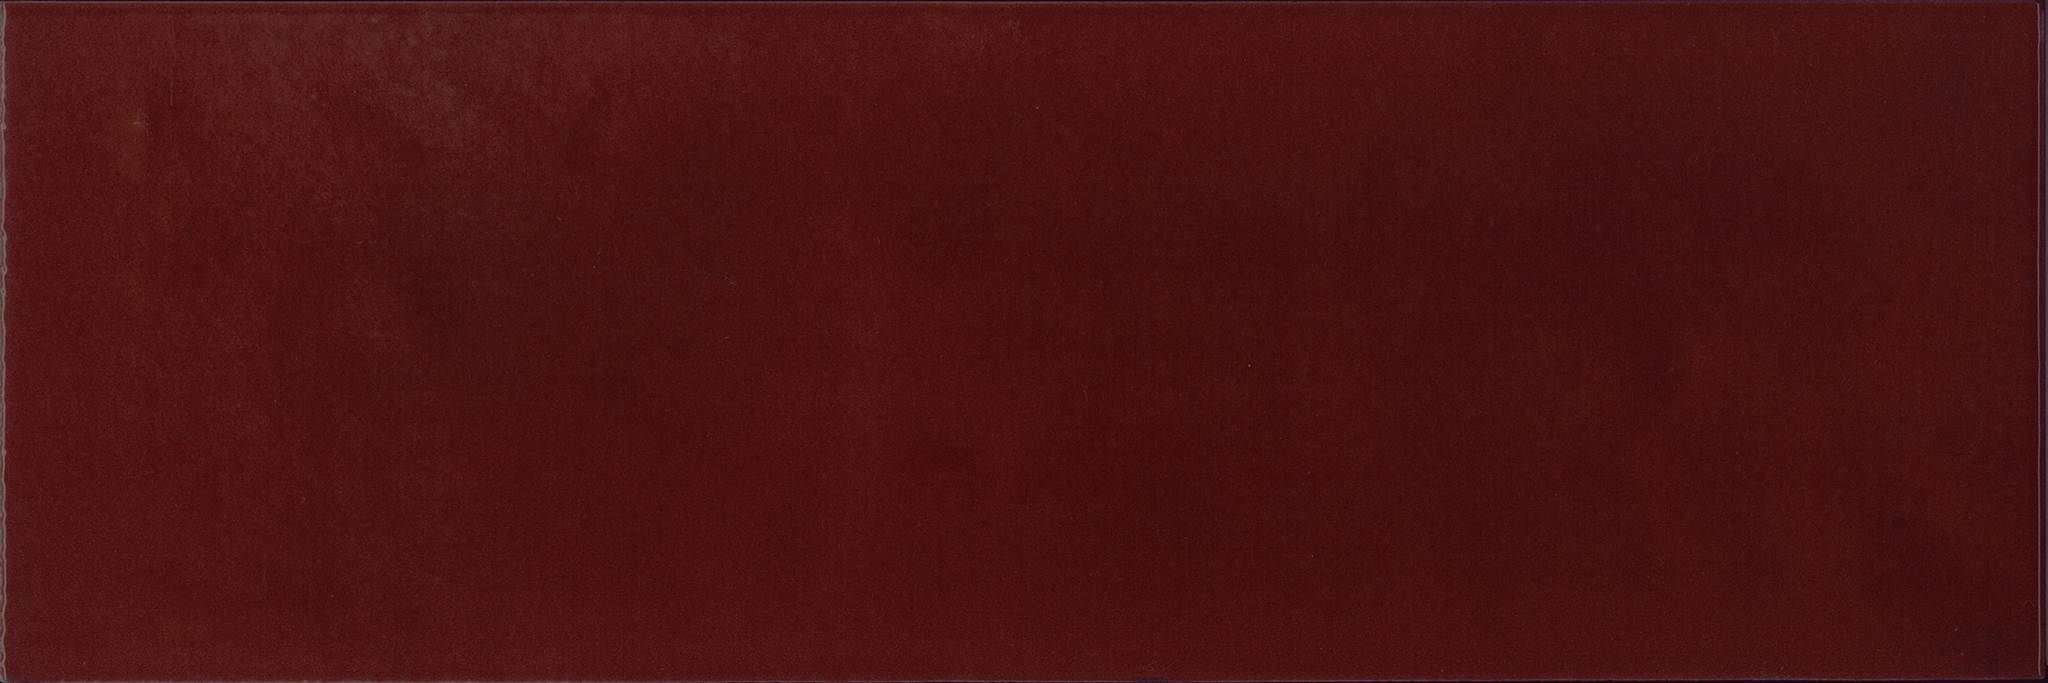 Керамическая плитка Absolut Keramika Granate Milano Brillo, цвет бордовый, поверхность глянцевая, прямоугольник, 100x300